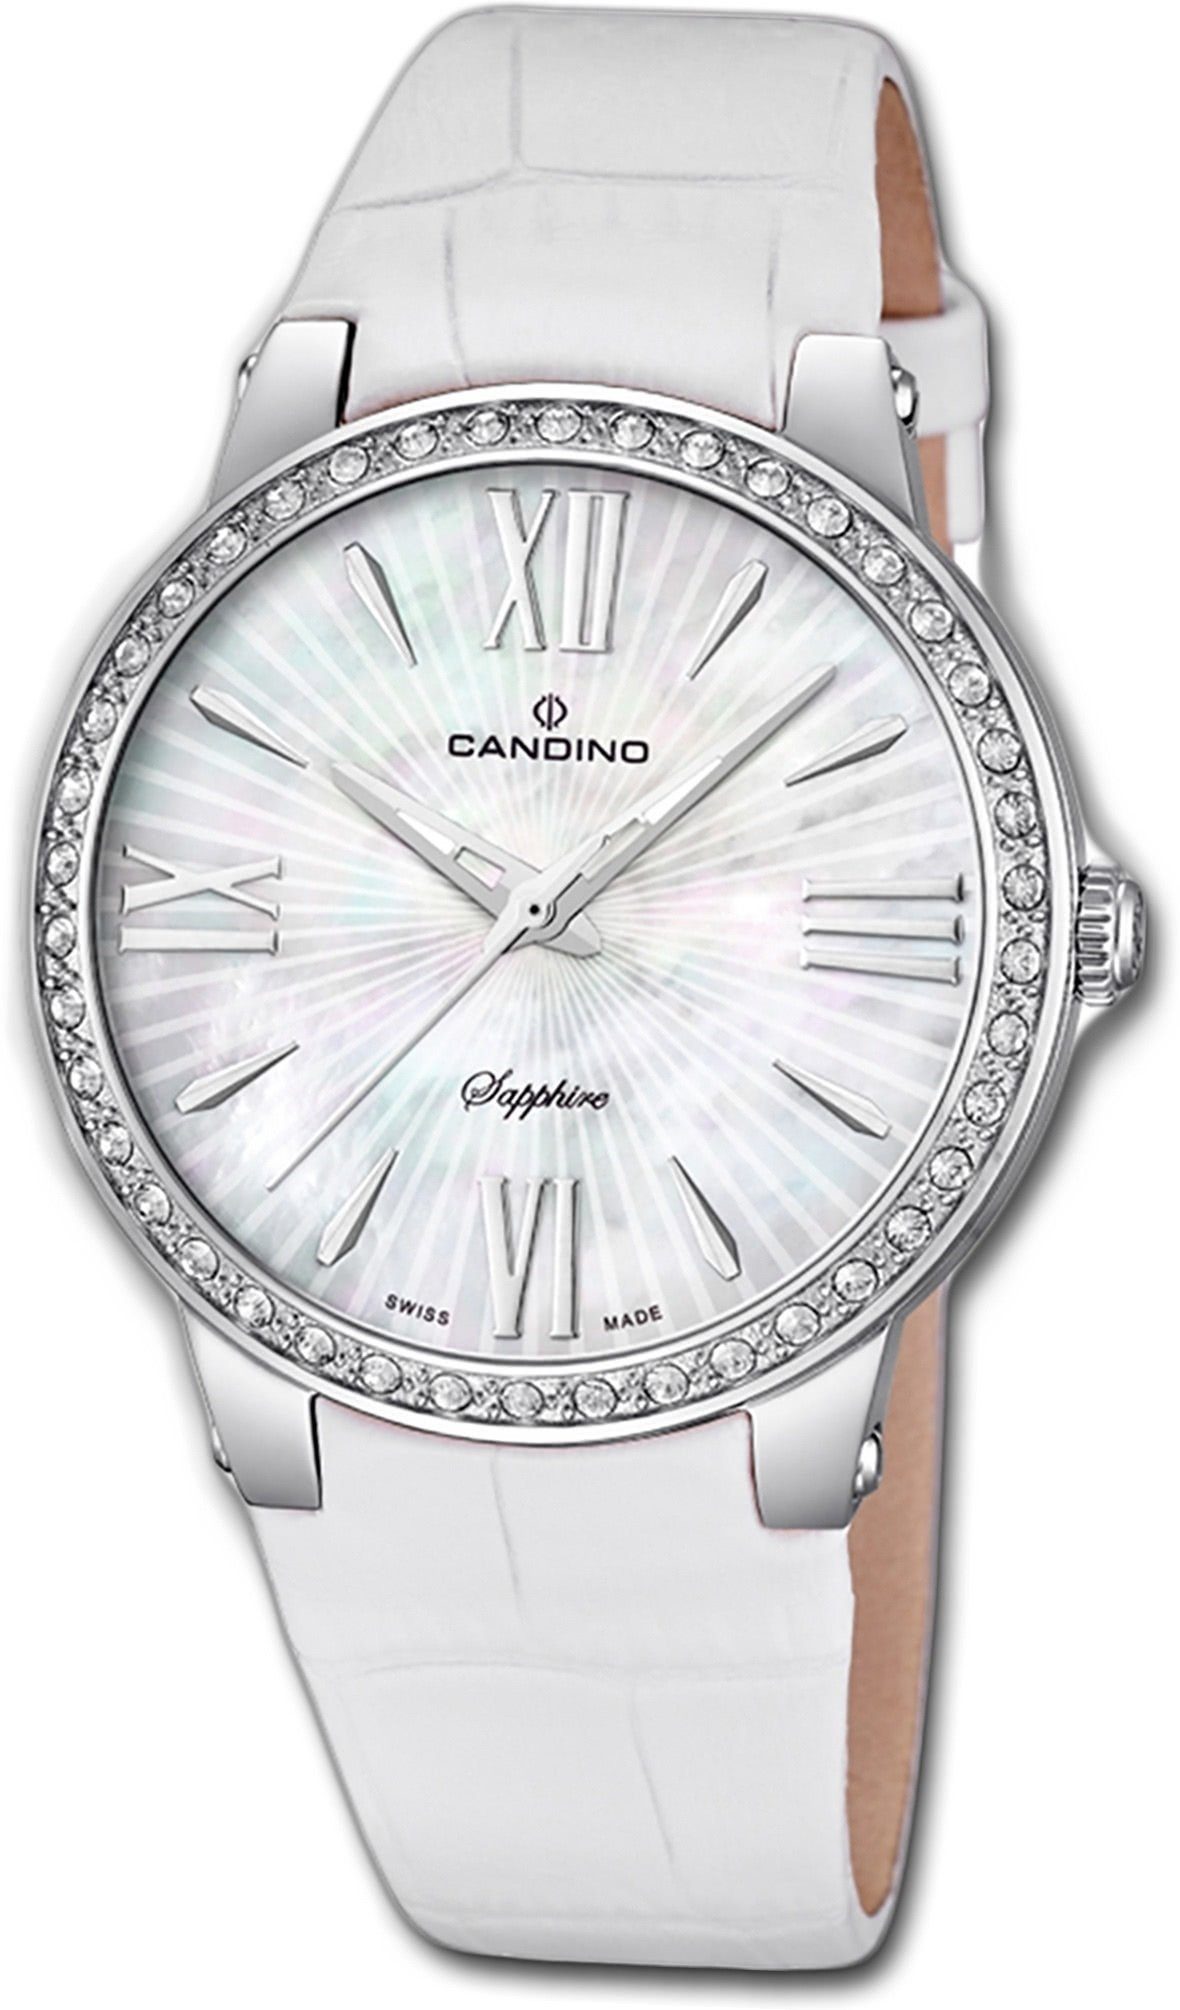 Candino Quarzuhr Candino Elegance Leder Quarz Damen Uhr, Damenuhr mit Lederarmband, rundes Gehäuse, mittel (ca. 36mm), Fashion-